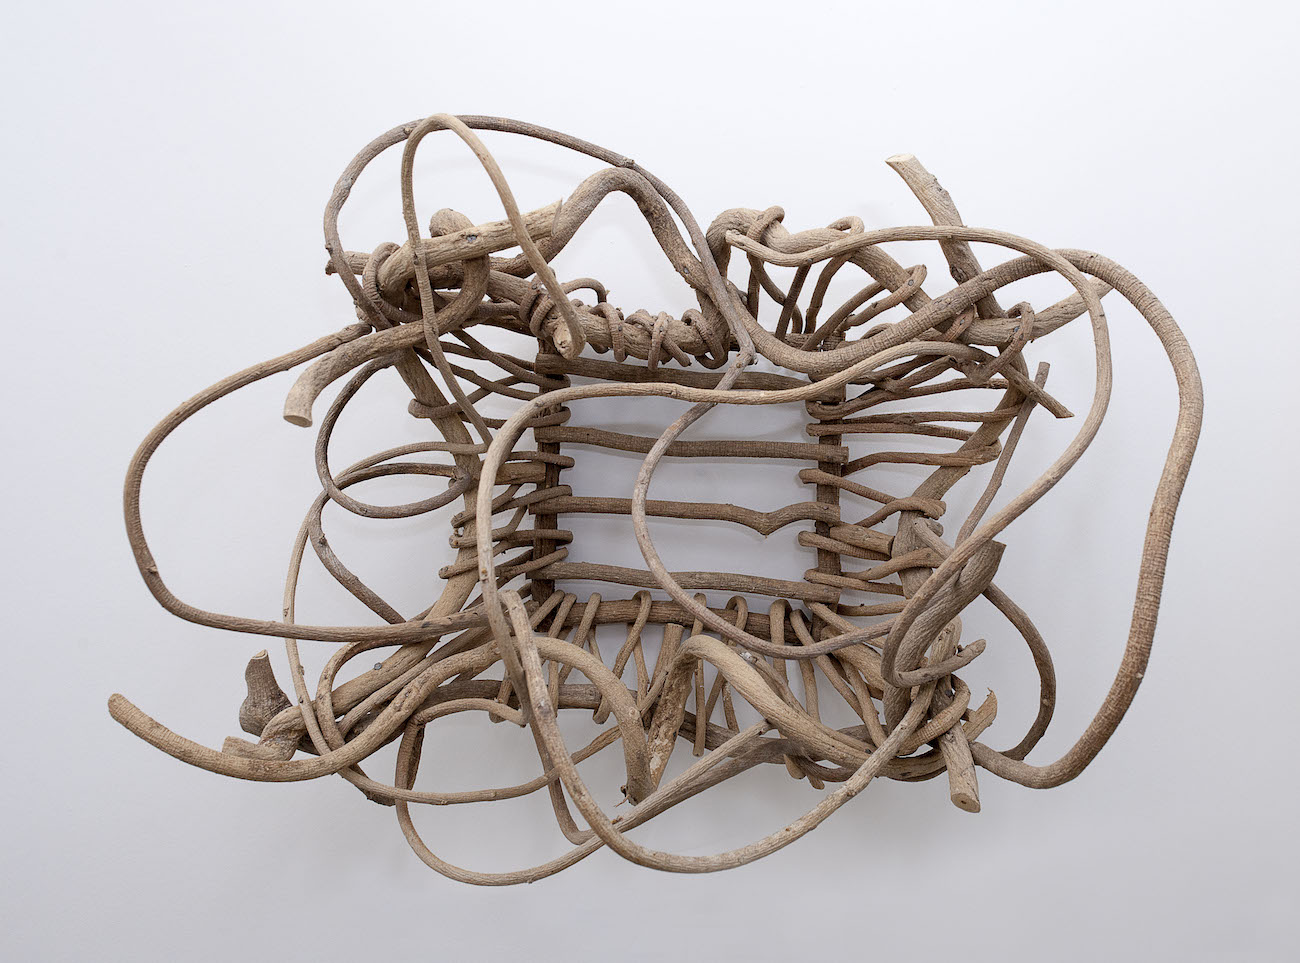 Kudzu basket (found) - Nell Gottlieb